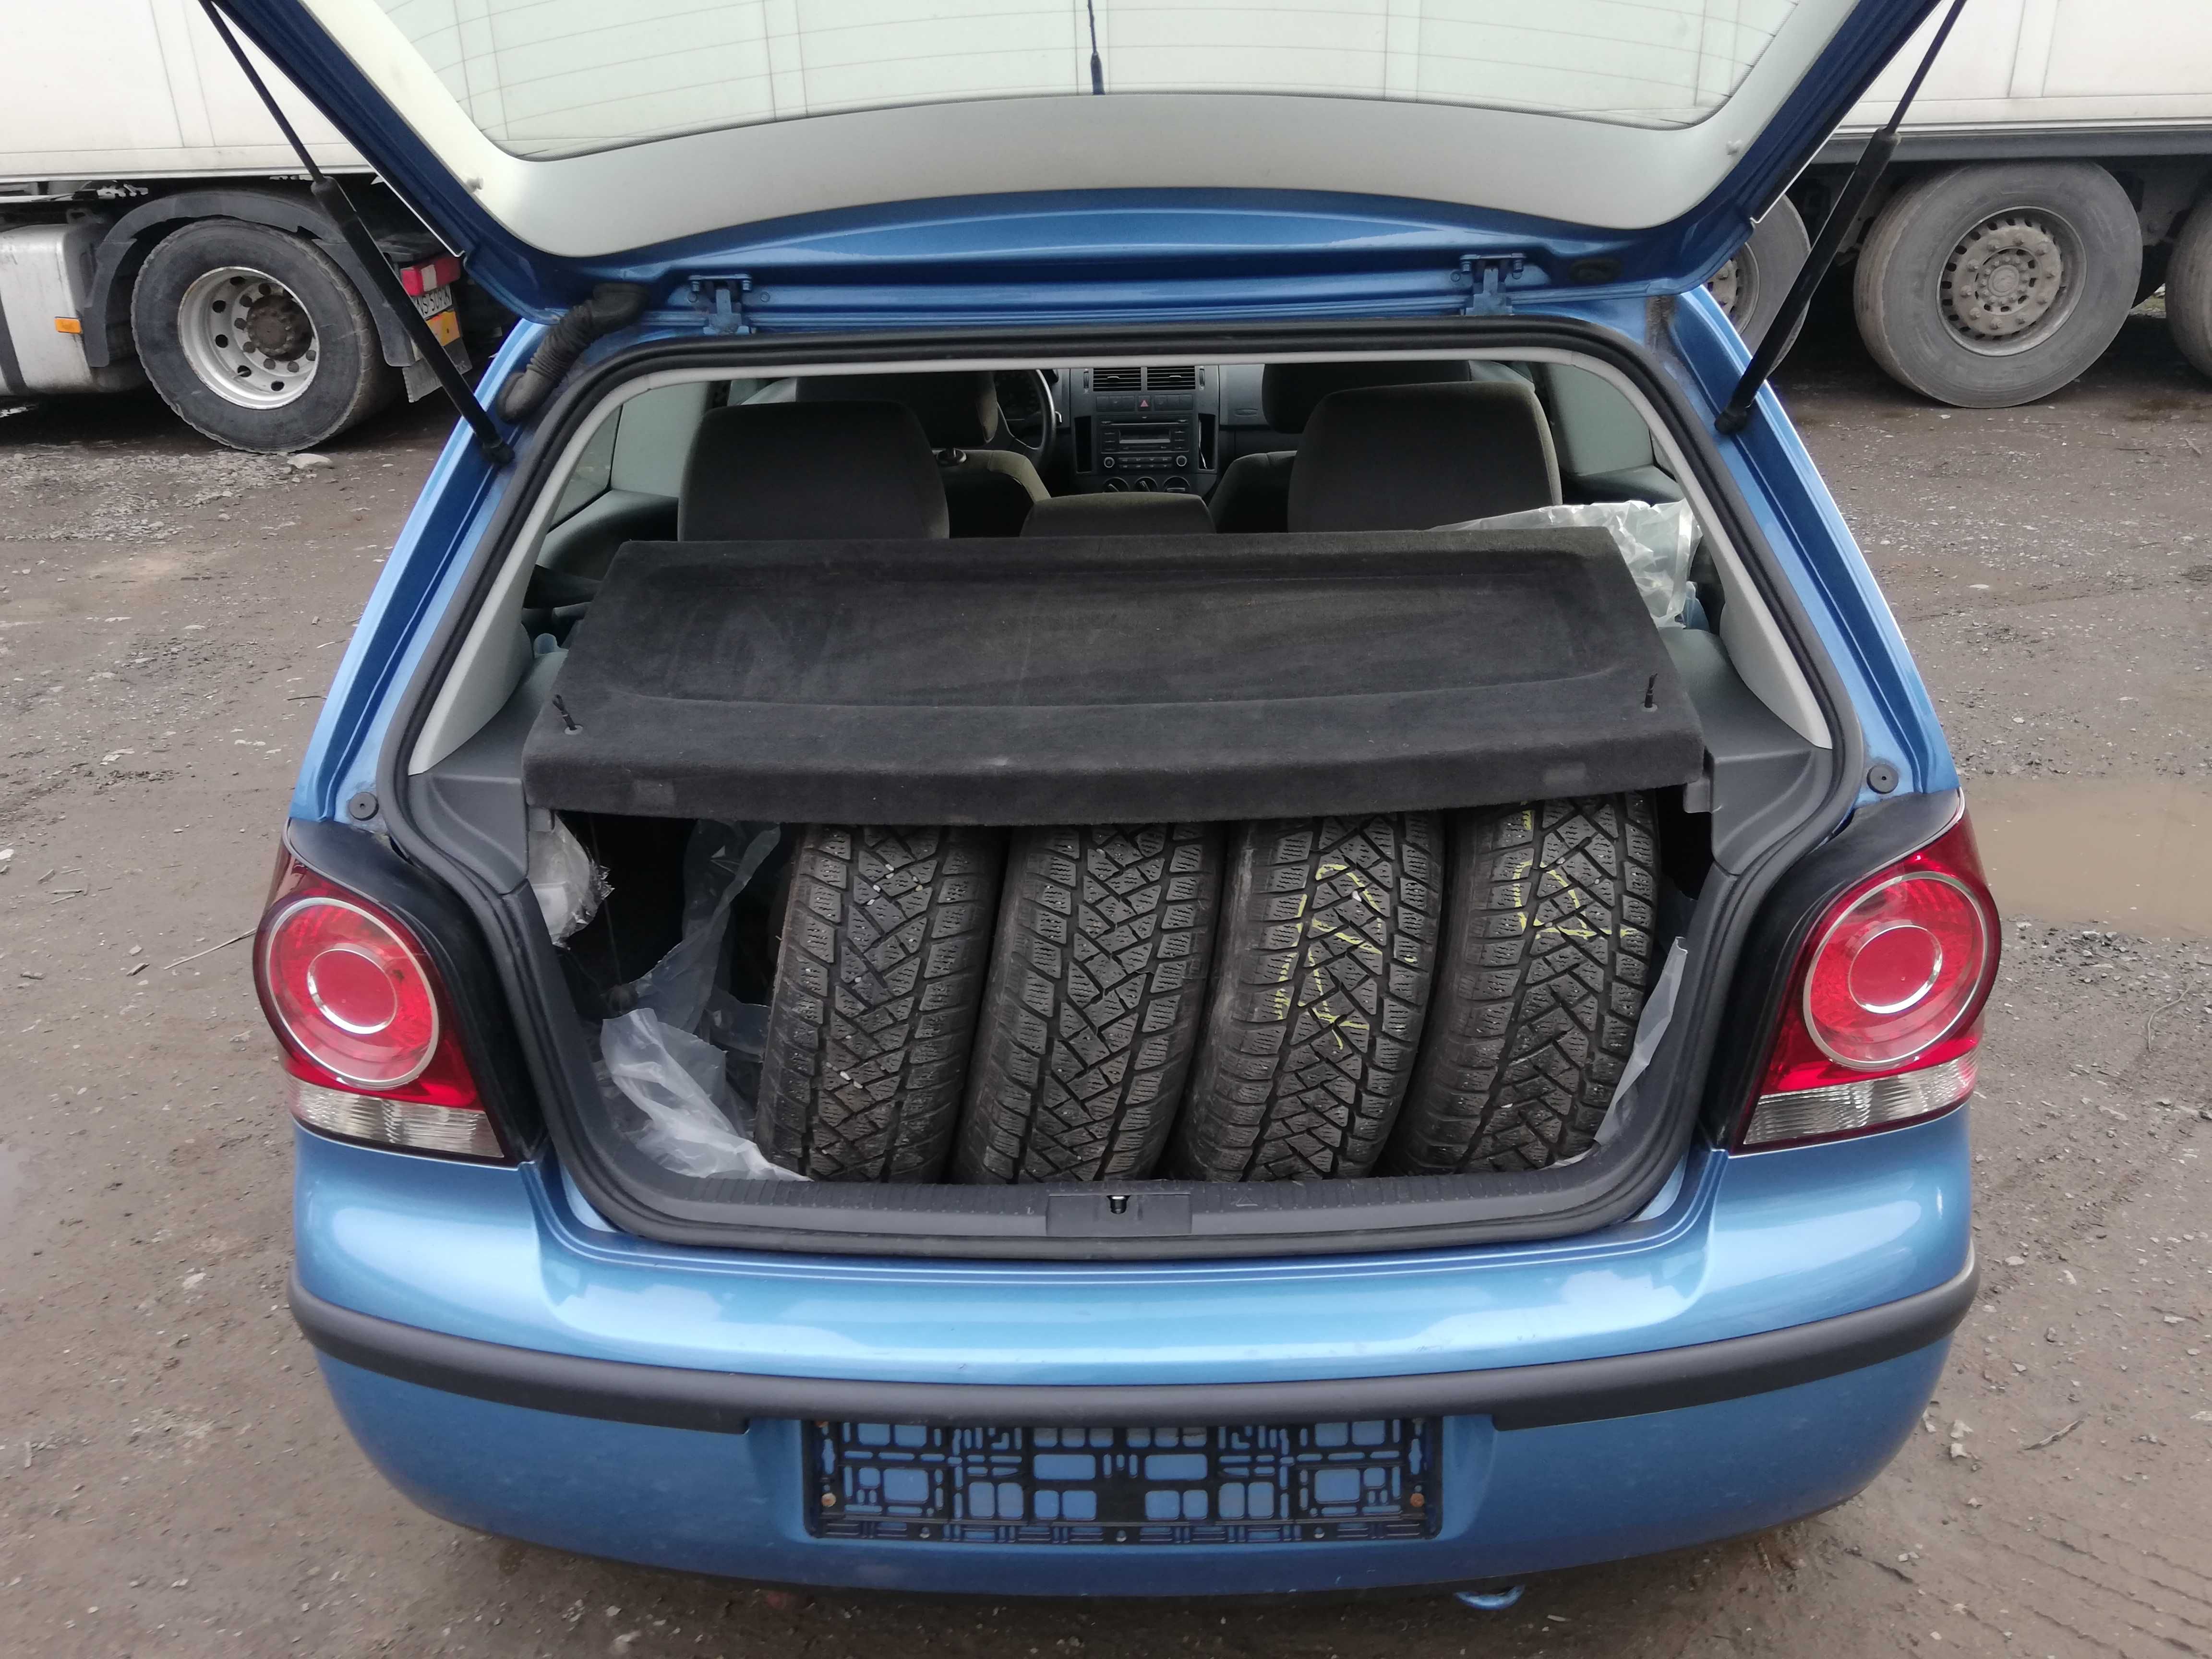 VW polo 1,4 benzyna ,AUTOMAT,alufelgi,klima,radio,koła zimowe,ksiażka